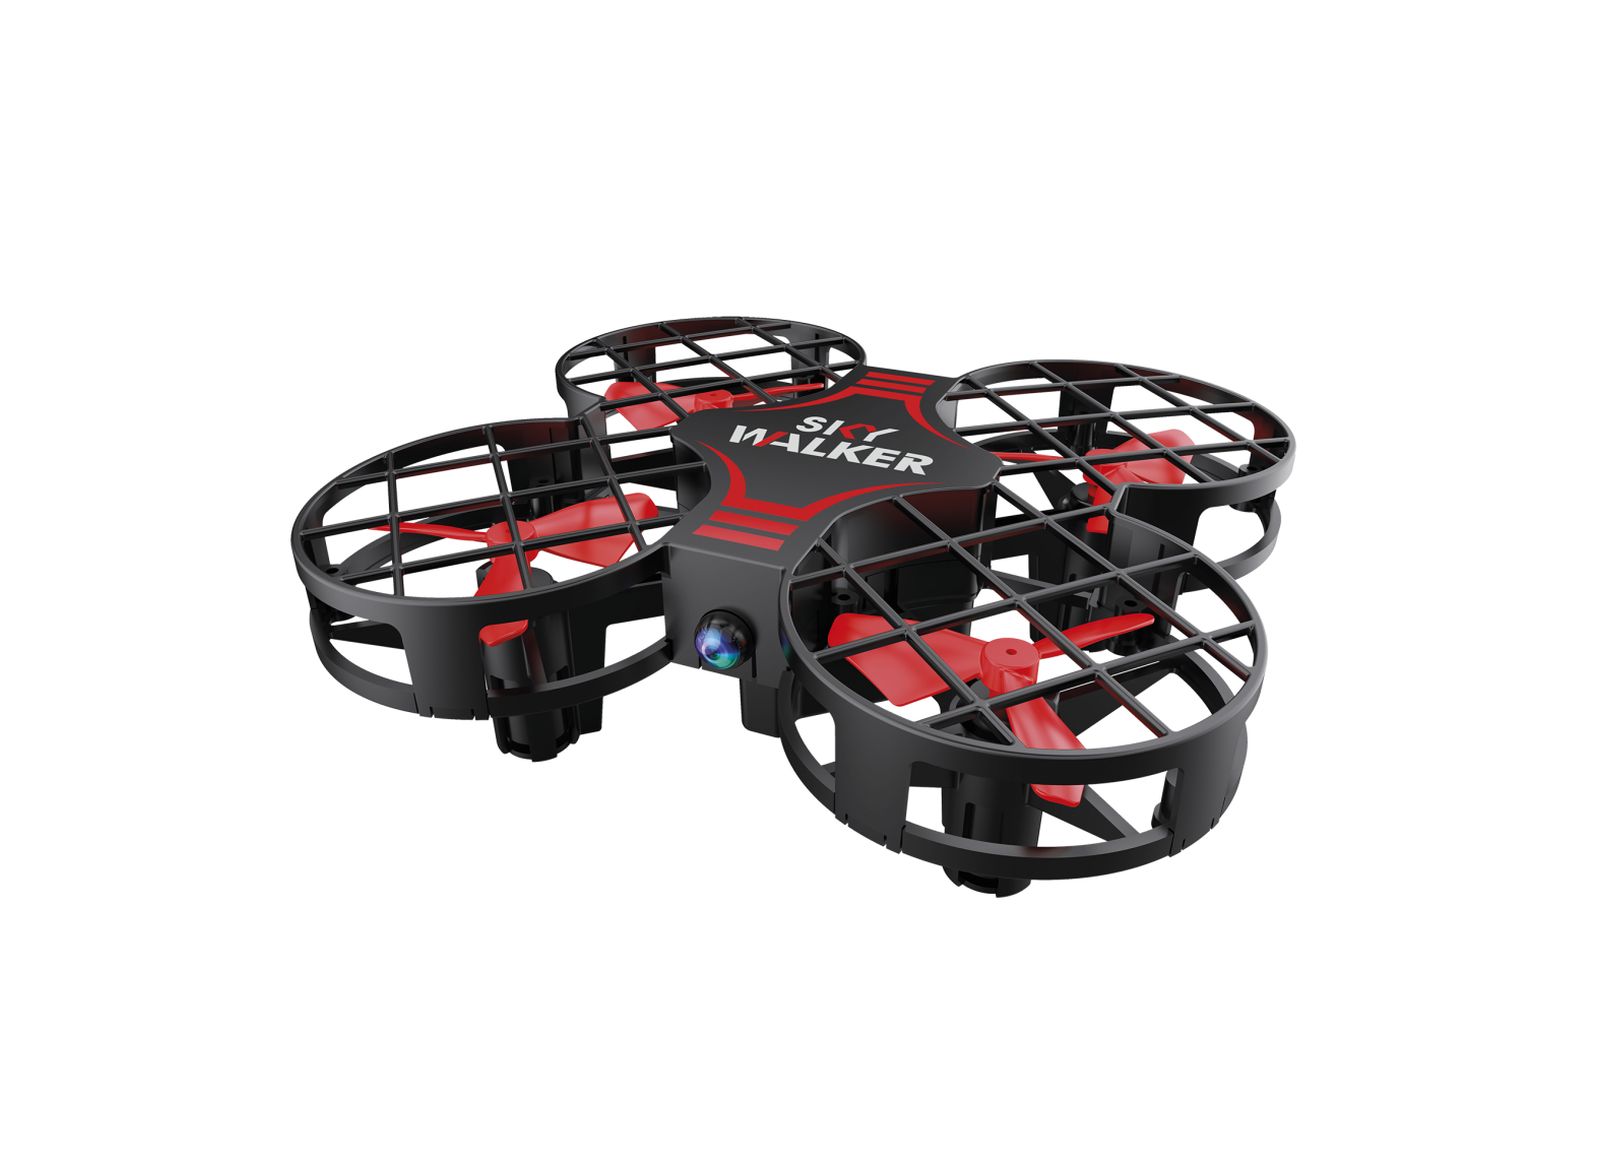 Drone r/c sky walker - MOTOR & CO.